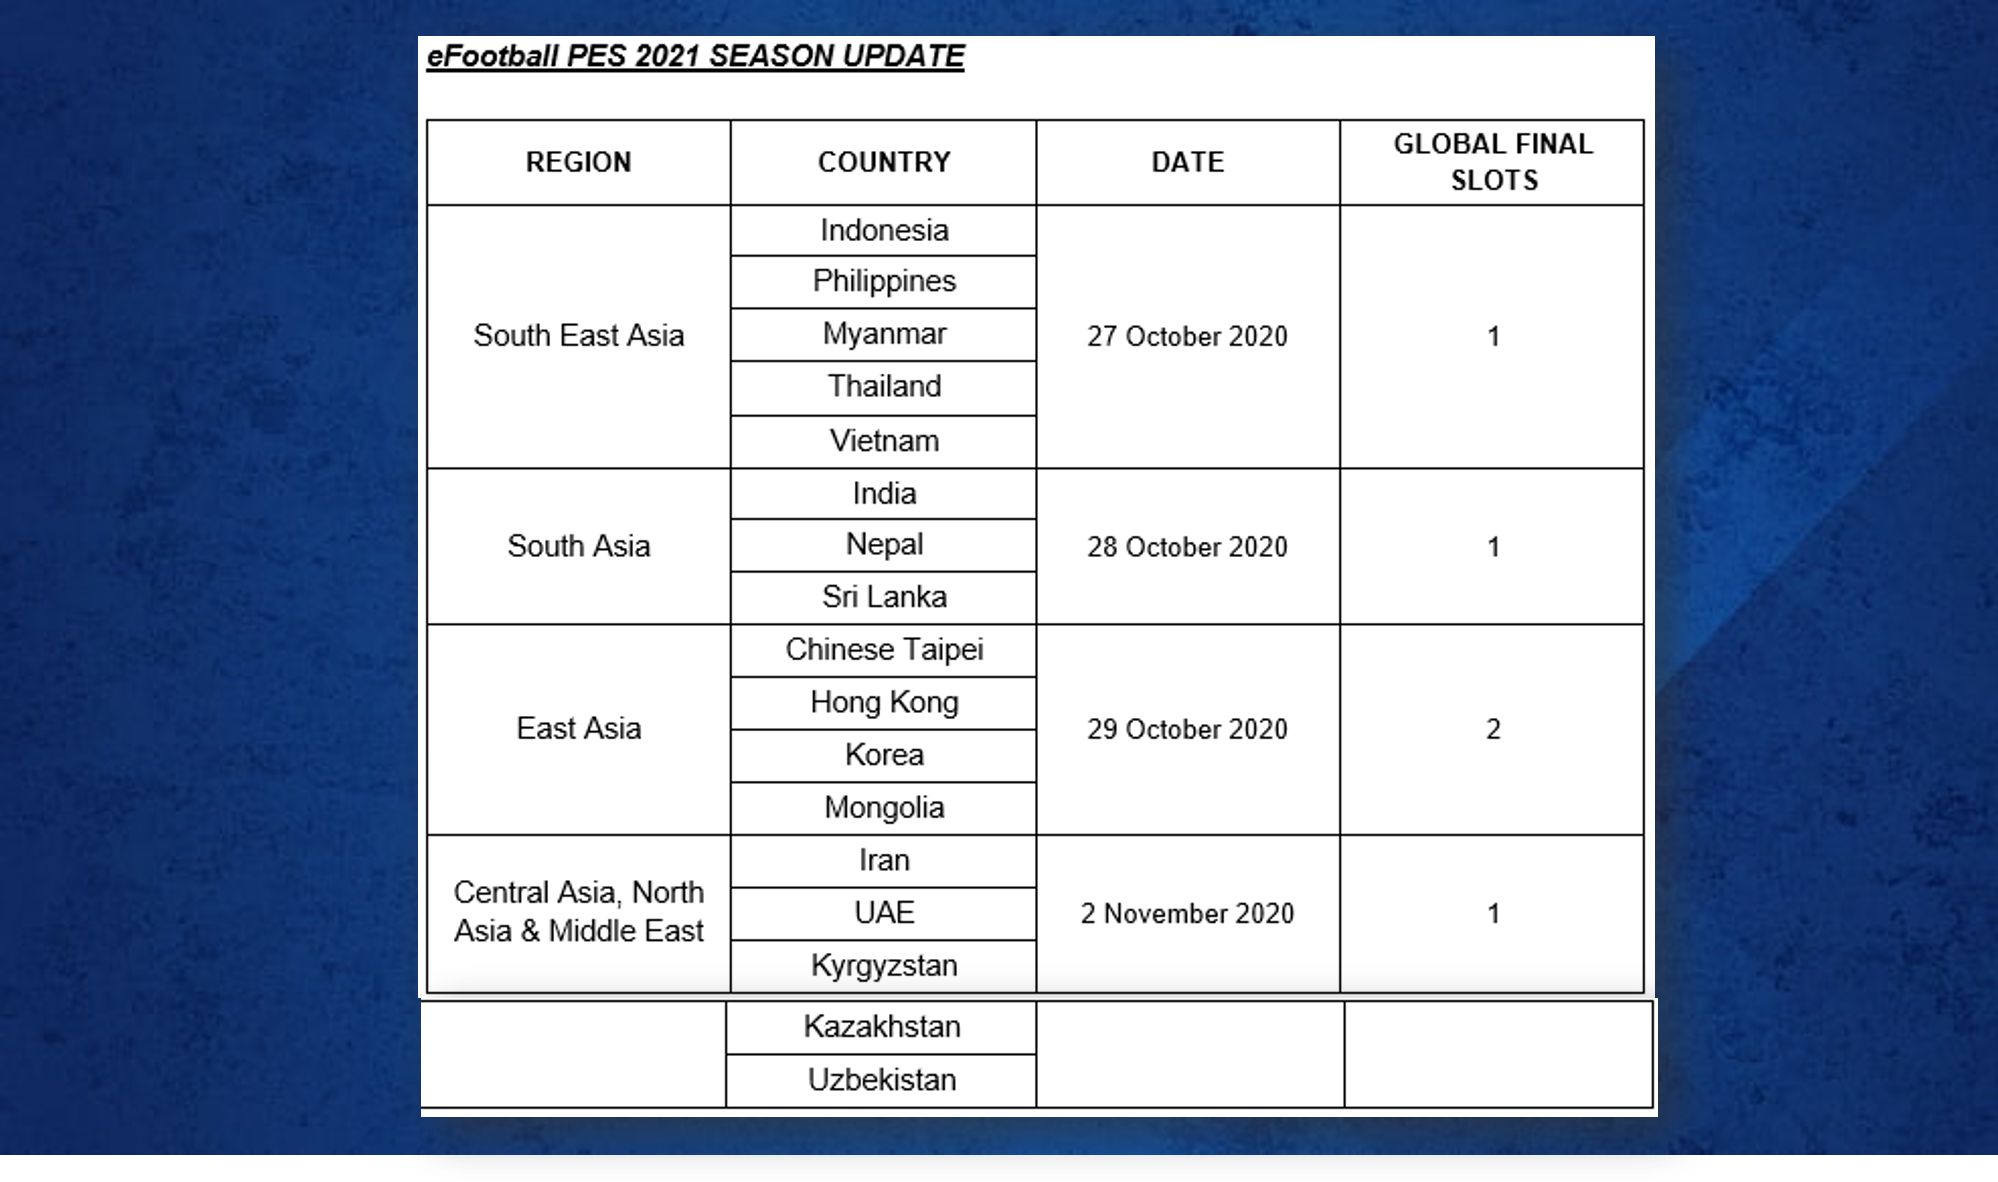  Jadual perlawanan bagi permainan eFootball PES 2021 SEASON Final UPDATE